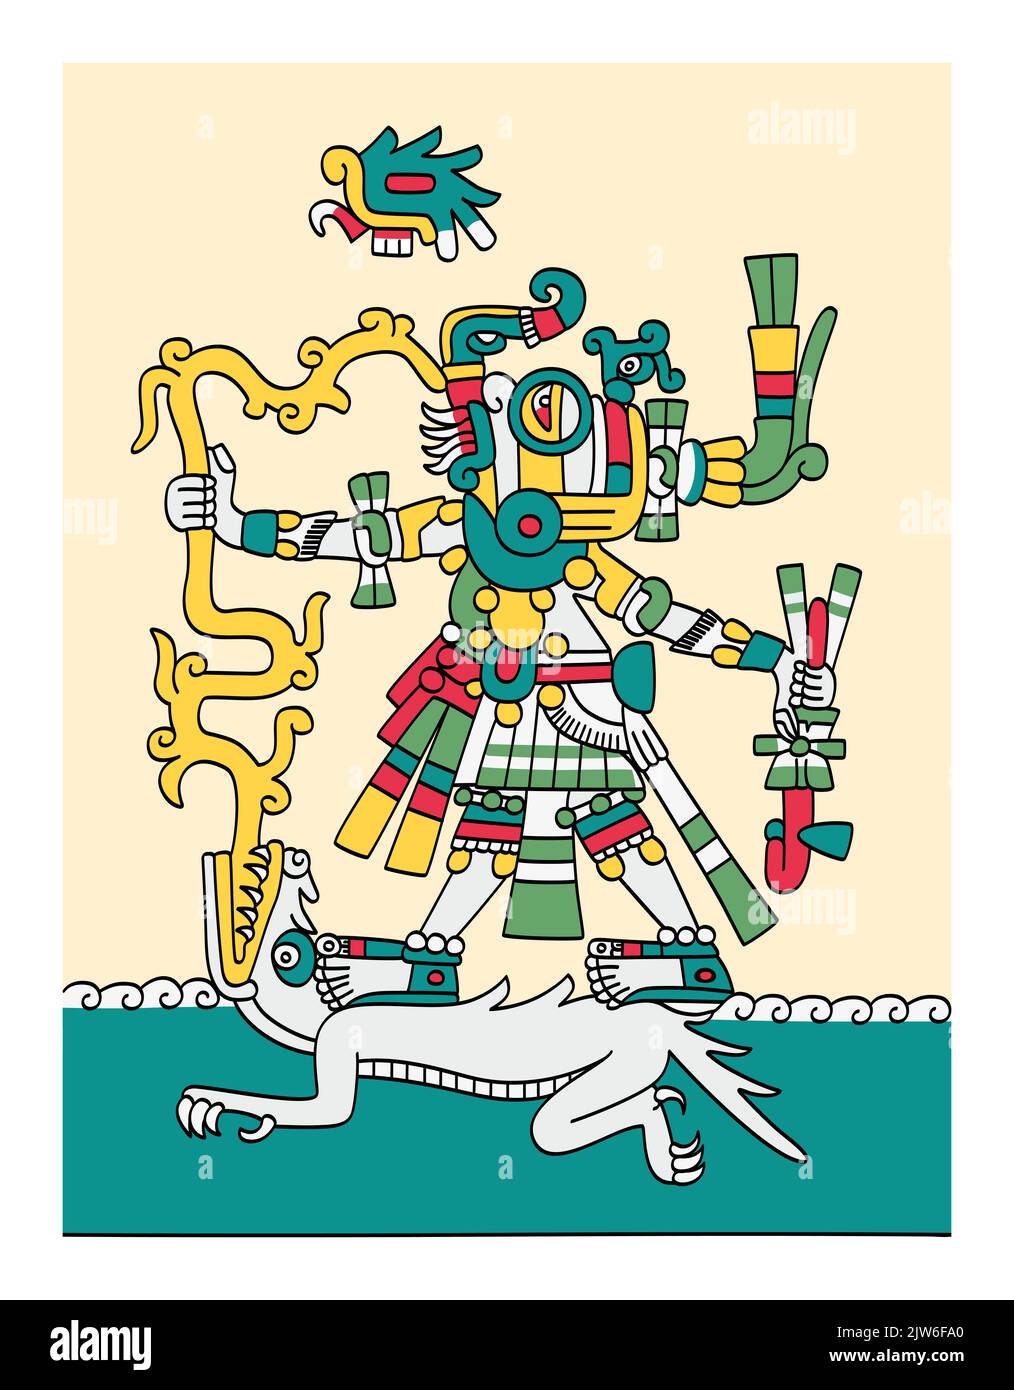 Tlaloc Aztec dieu de la pluie, de la fertilité terrestre et de l'eau, donneur de vie et de subsistance. Représenté avec des yeux de lunettes, des fangs, des éclairs et des créatures aquatiques. Banque D'Images